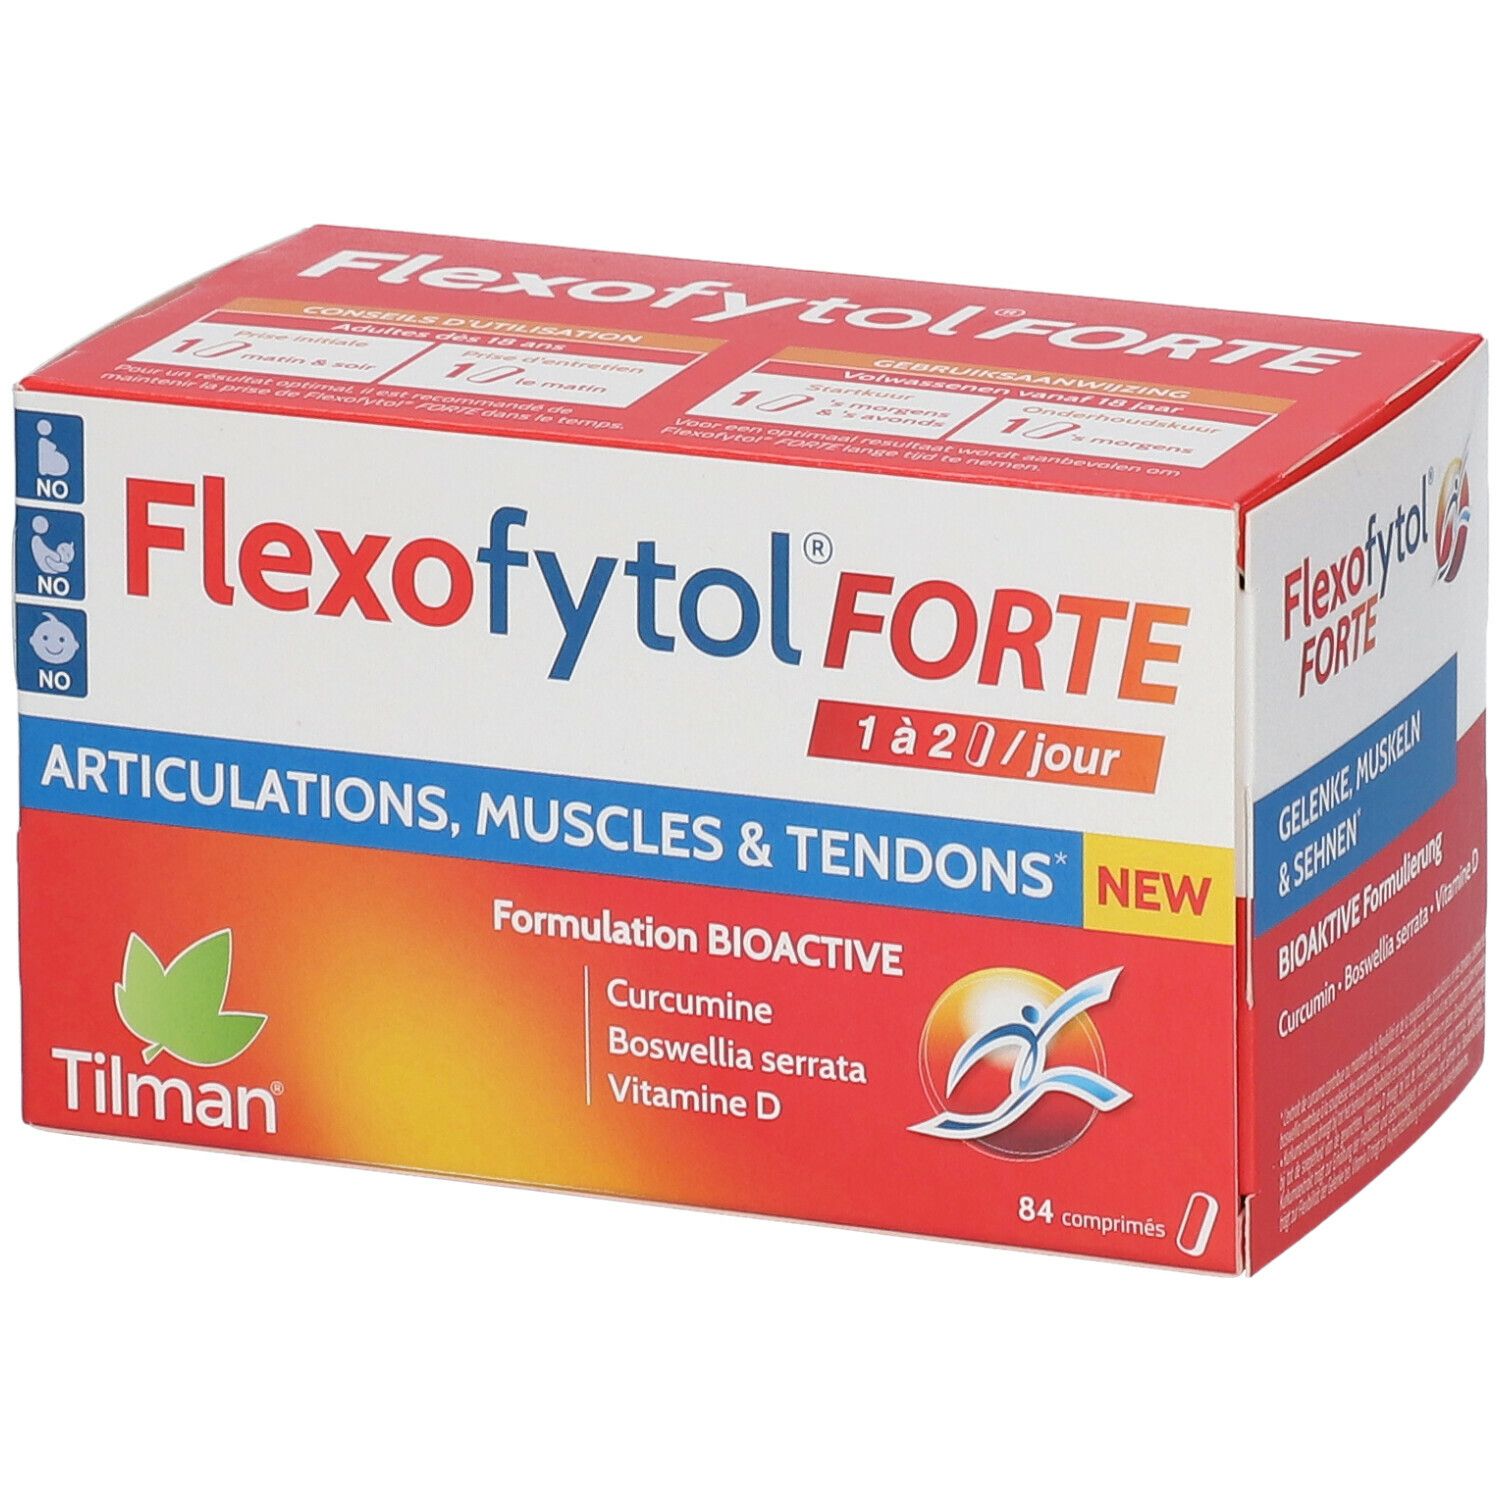 Flexofytol® Forte